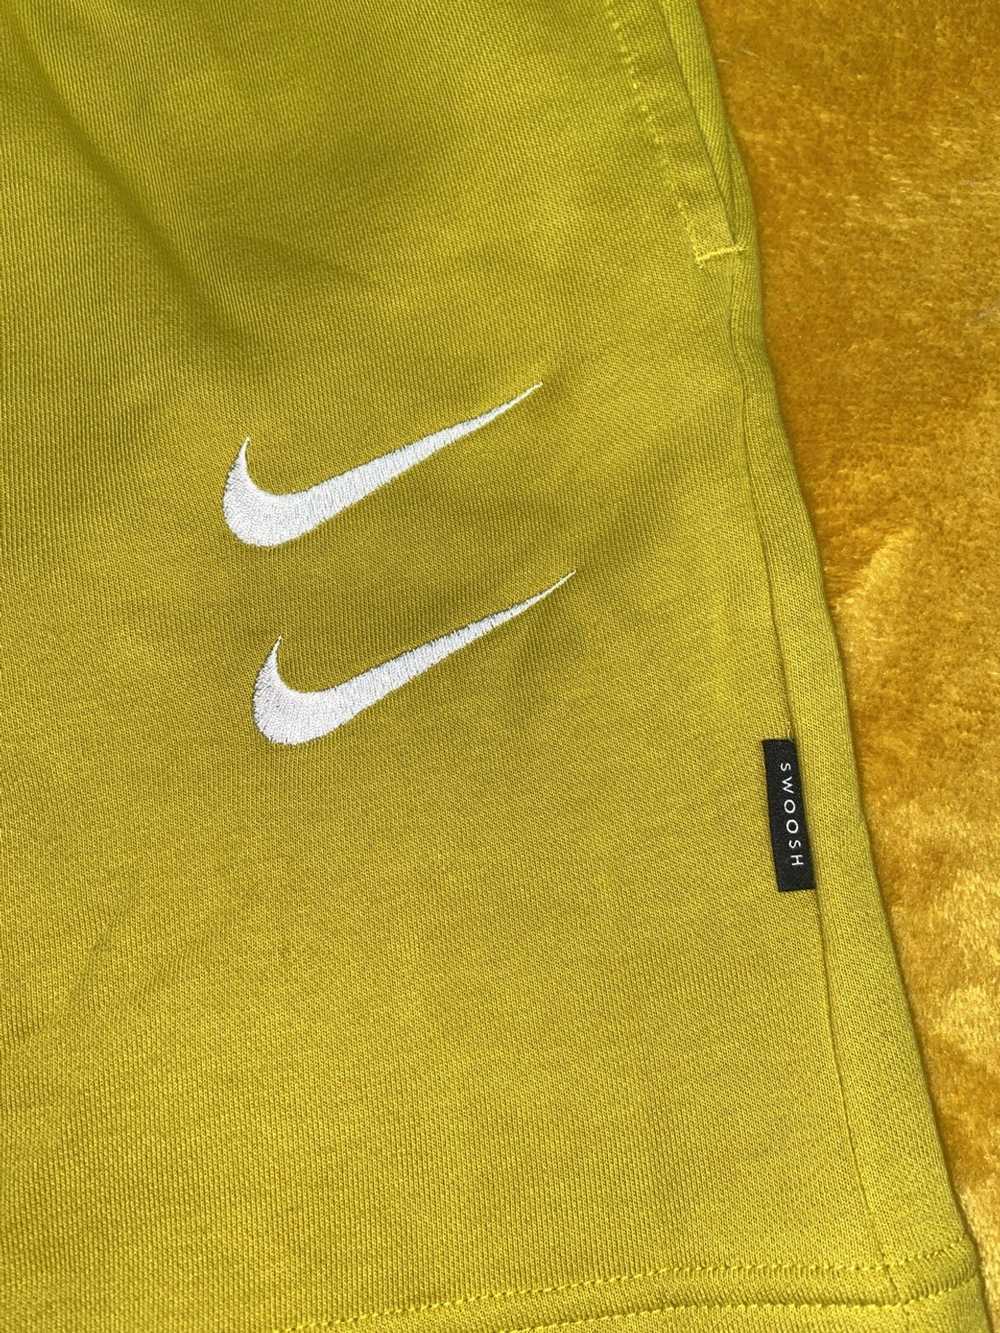 Nike Men’s Nike Sweat Shorts Size S - image 4